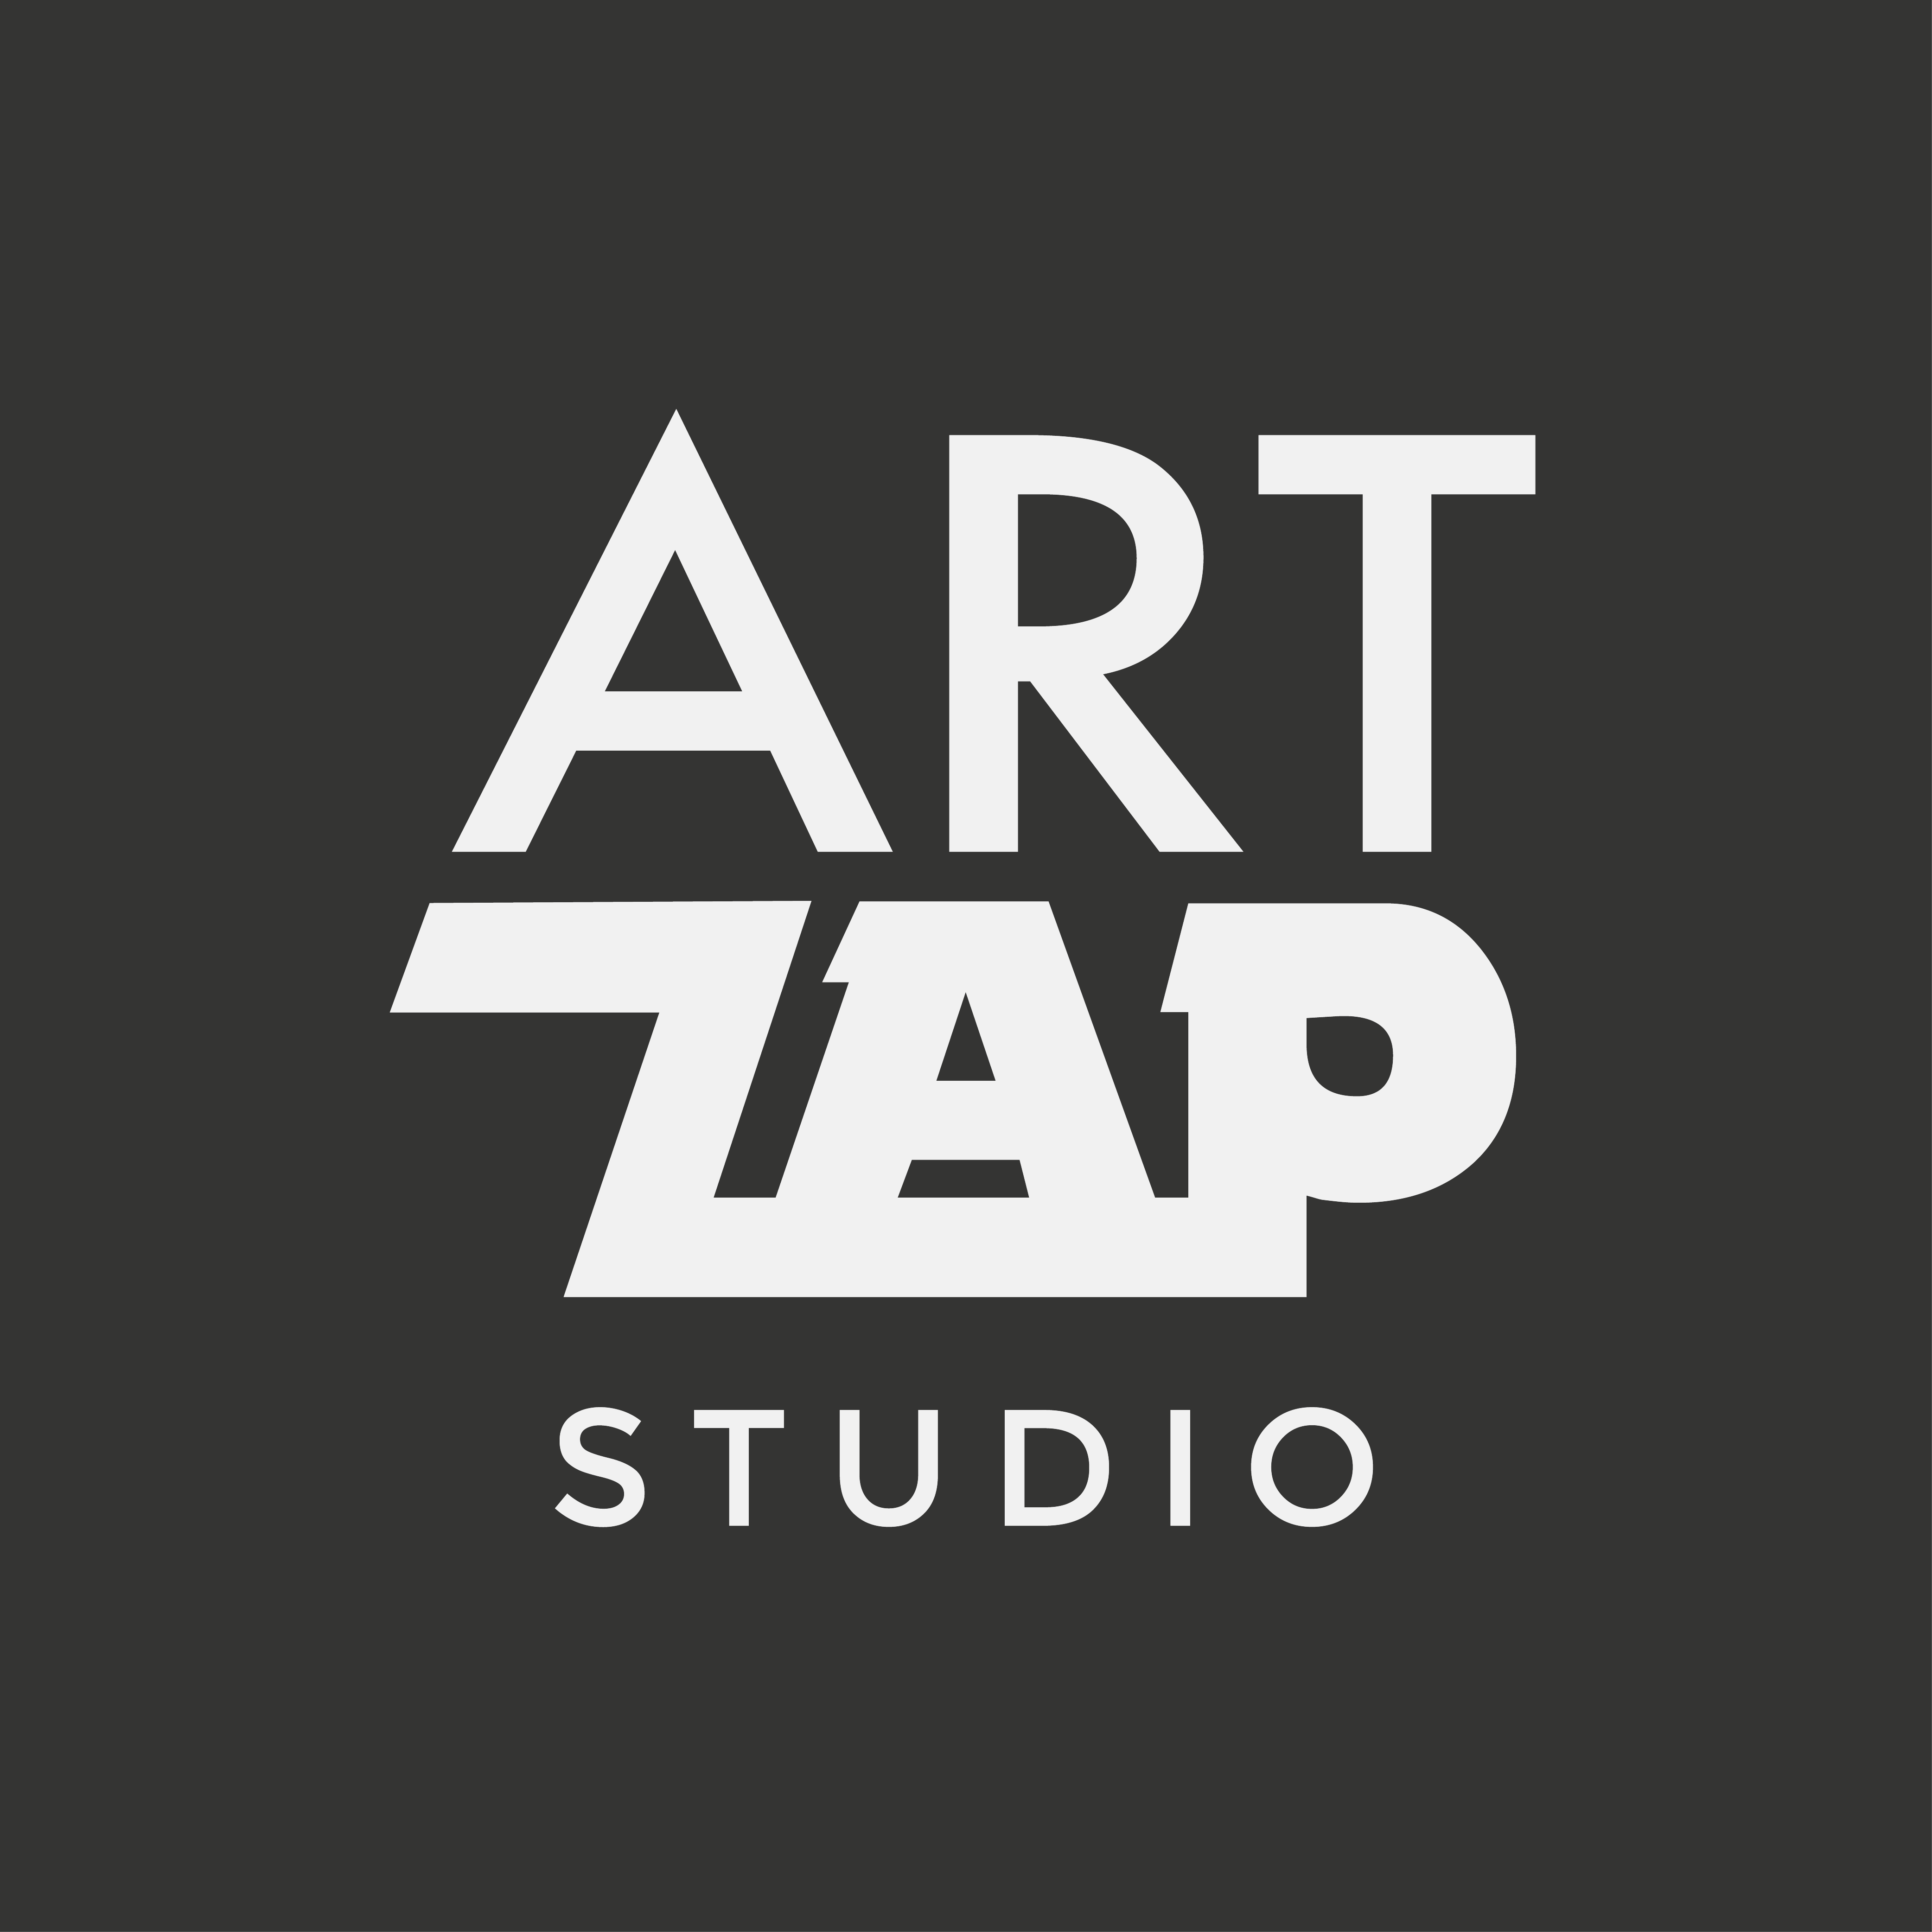 Artzap Studio